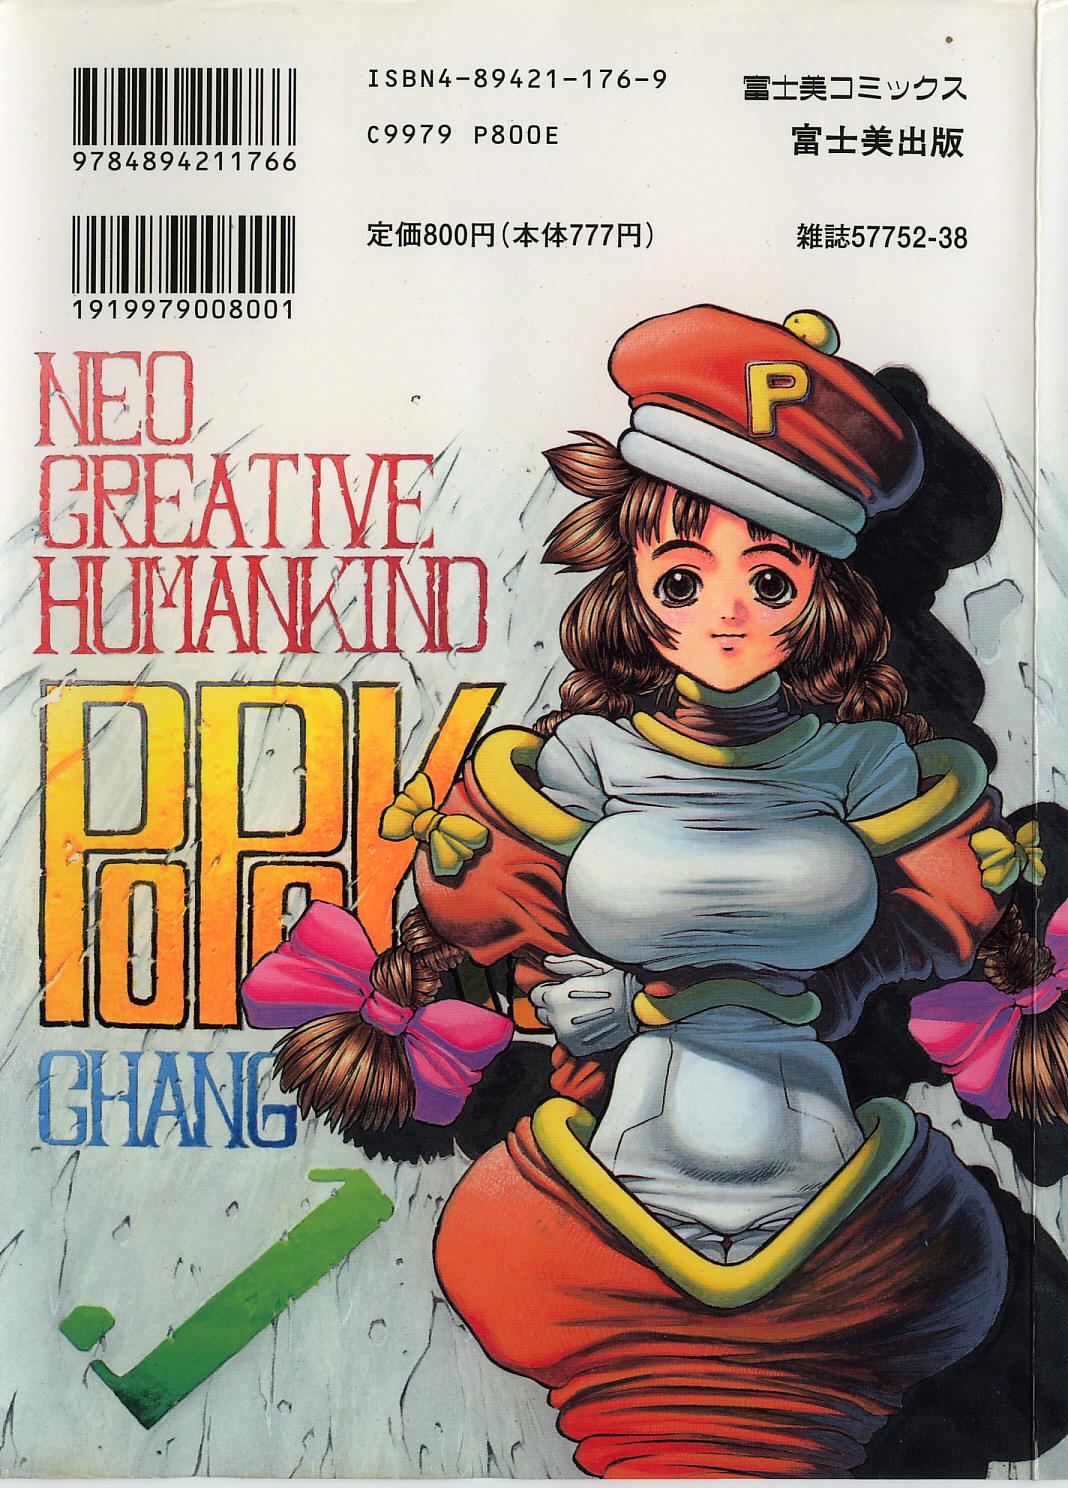 [Hidiri Rei] Shinzou Jinrui Popoko-chan Kidou-hen - Neo Creative Humankind Popoko Chang .1 3